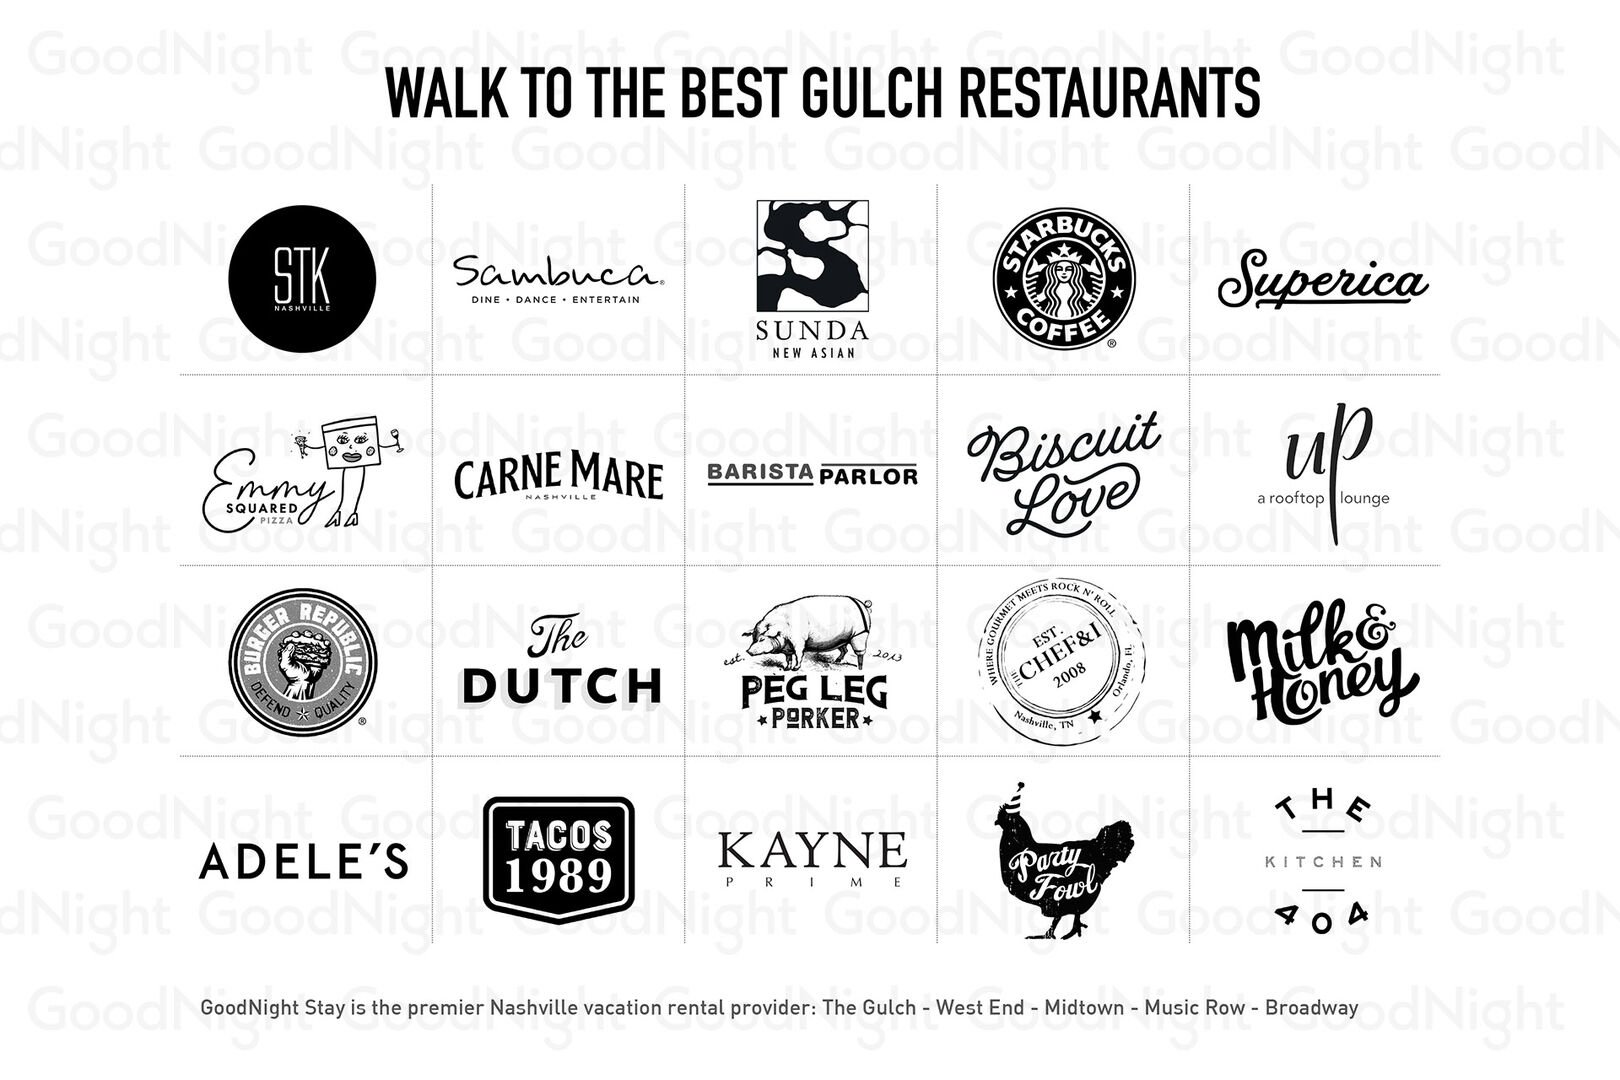 Walk to amazing Gulch restaurants!